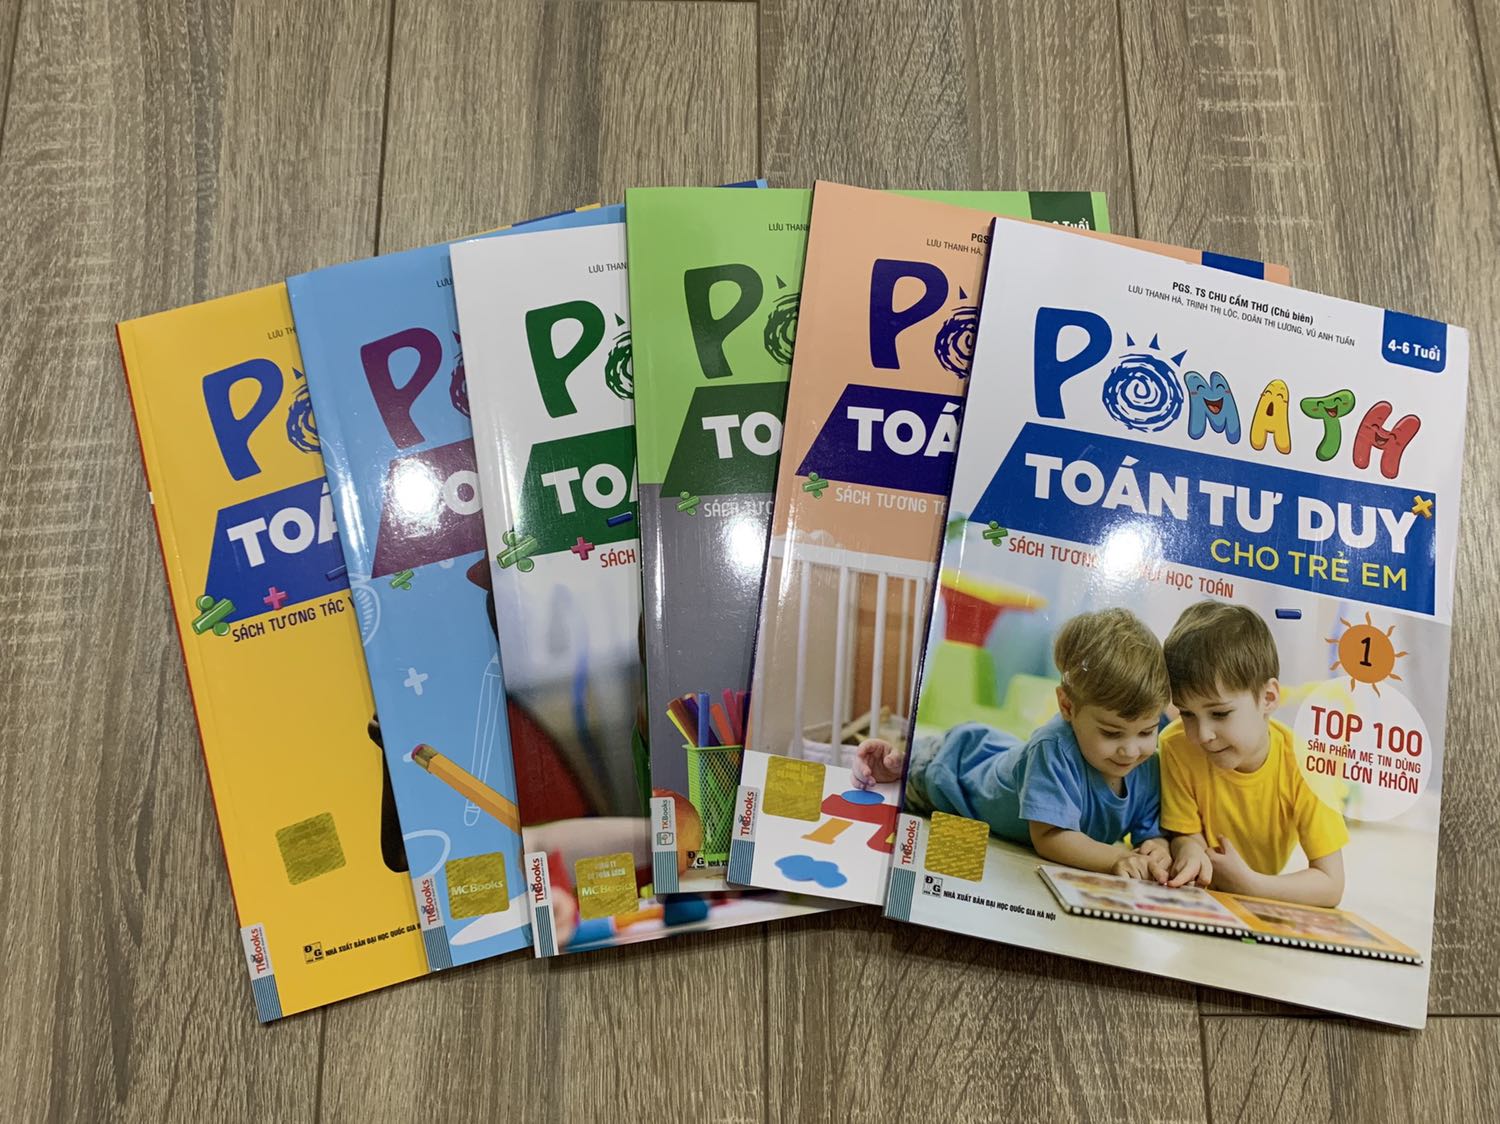 Sách Toán tư duy Pomatch cho trẻ, Sách Toán tư duy Pomatch cho trẻ từ 4 đến 6 tuổi